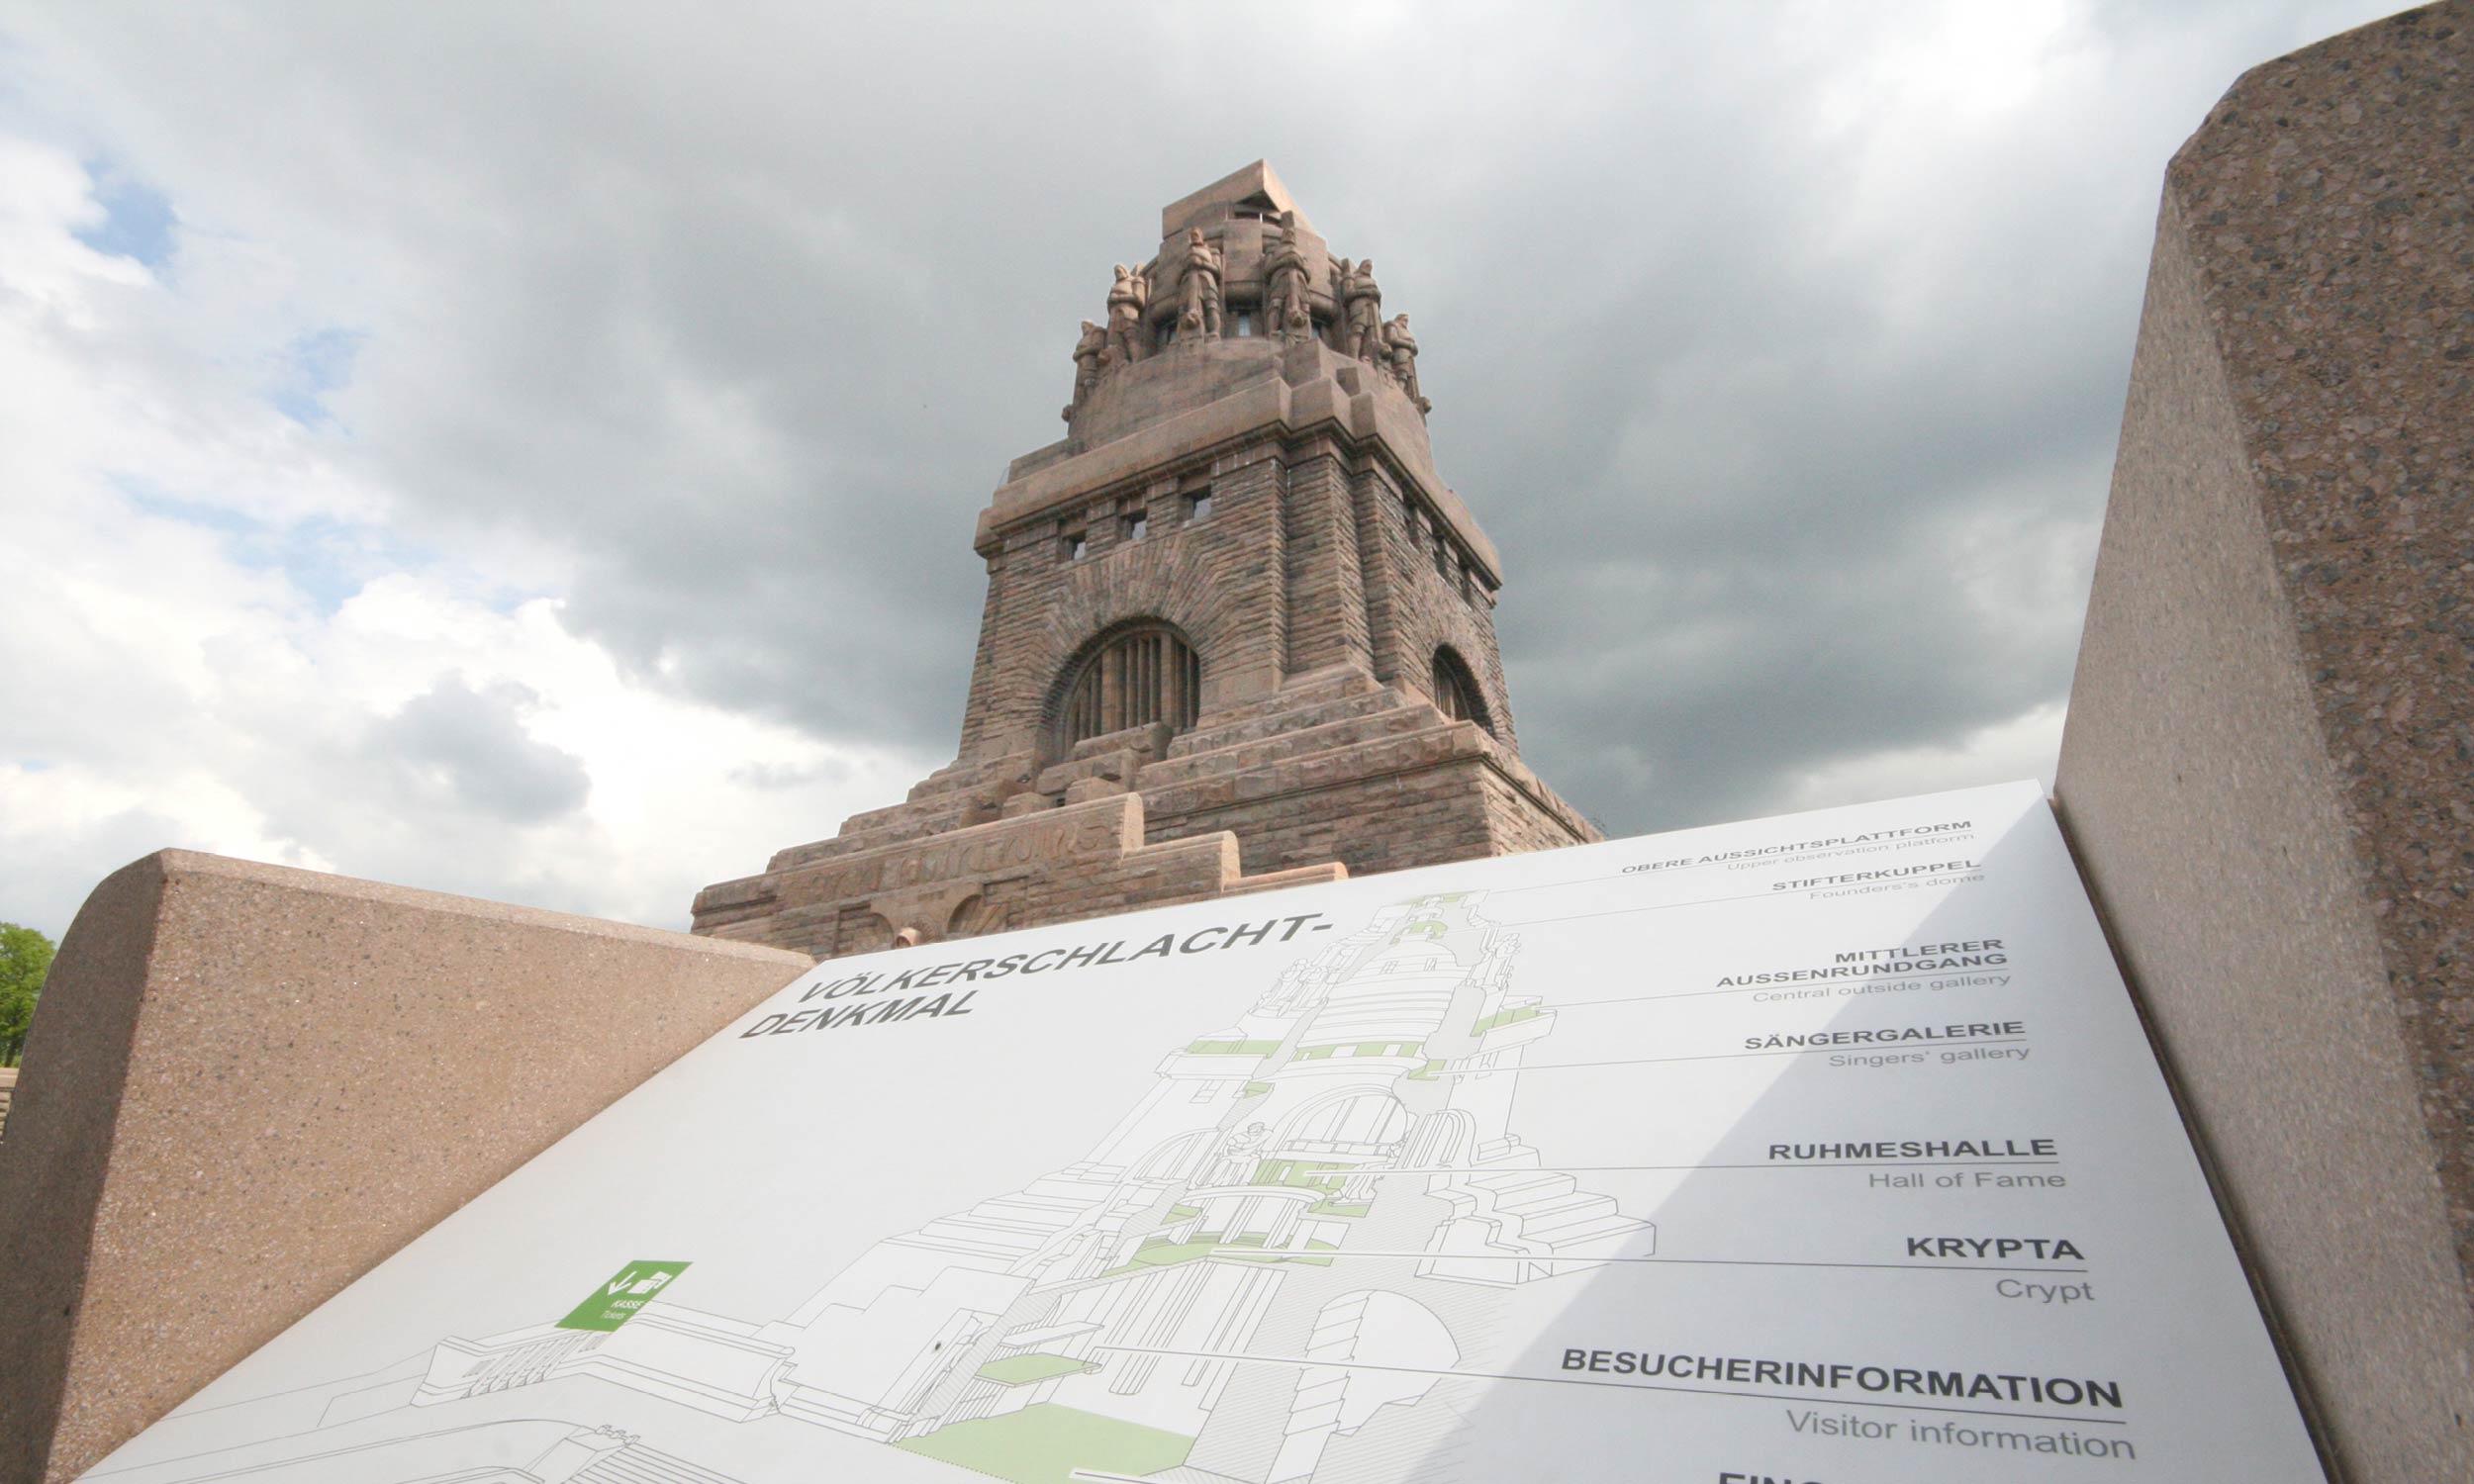 Fokus auf eine Infotafel, die das Denkmal im Querschnitt zeigt. Im Hintergrund ist das imposante Denkmal zusehen, das sich in den bewölkten Himmel streckt